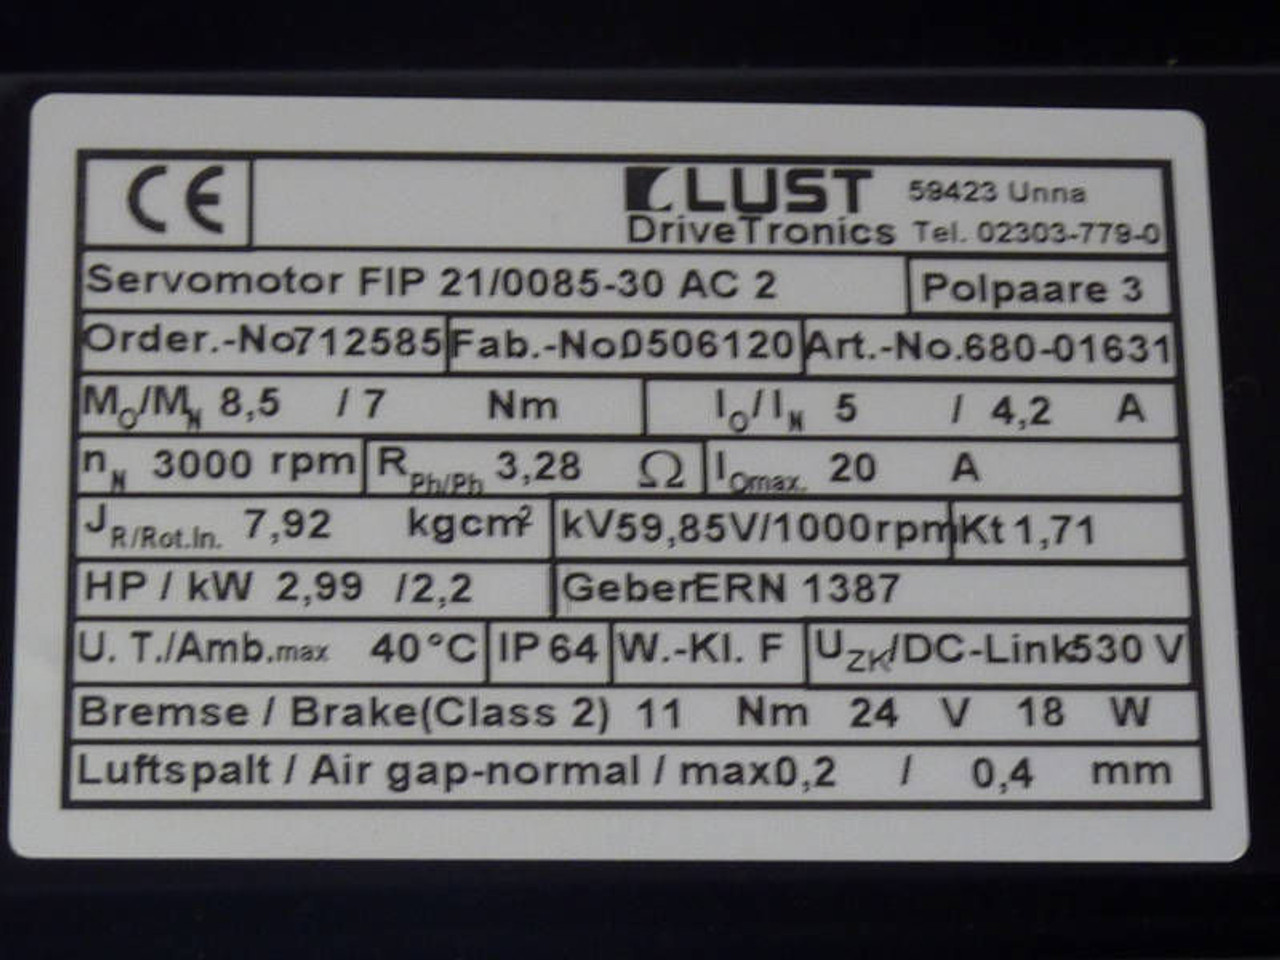 LUST DriveTronics Servo Motor 2.99HP 3000RPM 530V 8.5/7Nm 3.28Ohm 5/4.2A USED